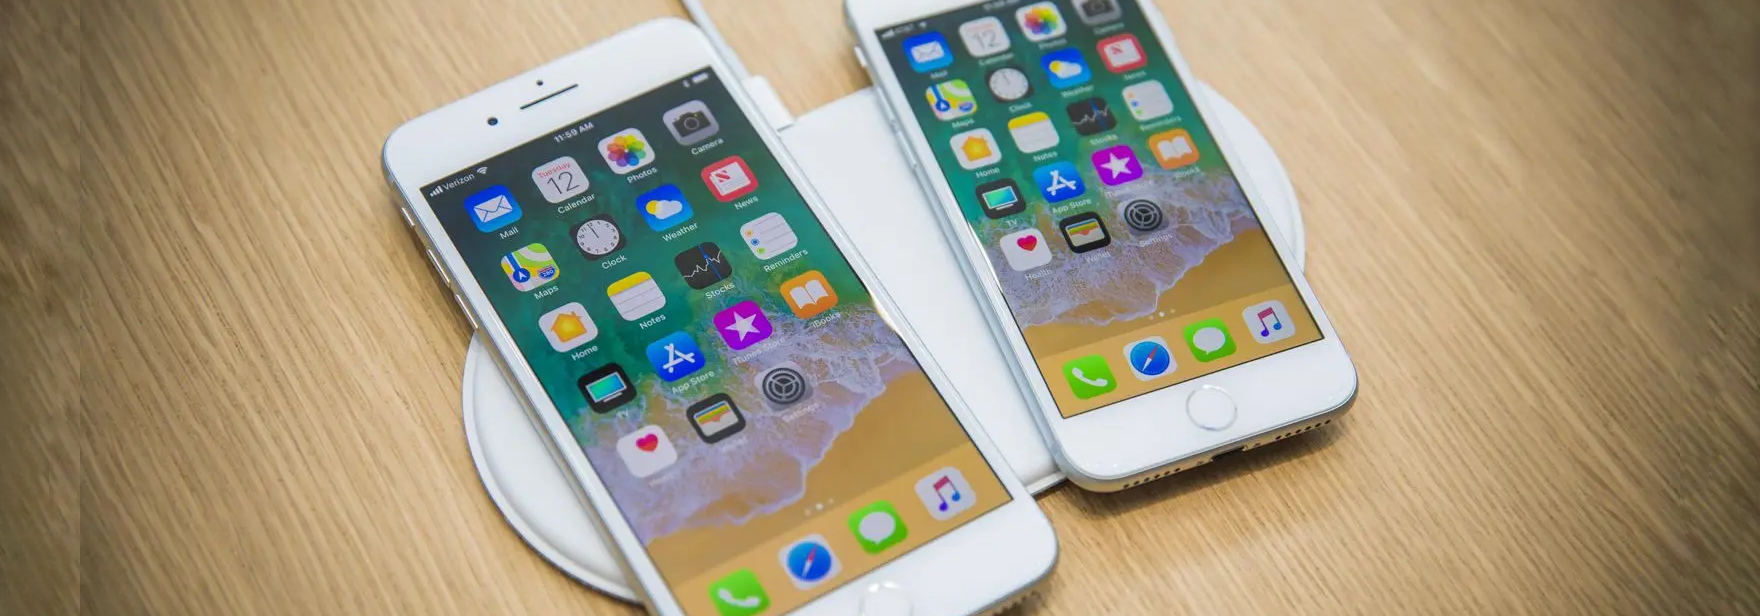 Исследователи обнаружили, что старый iPhone можно ускорить, если выбрать в качестве региона Францию